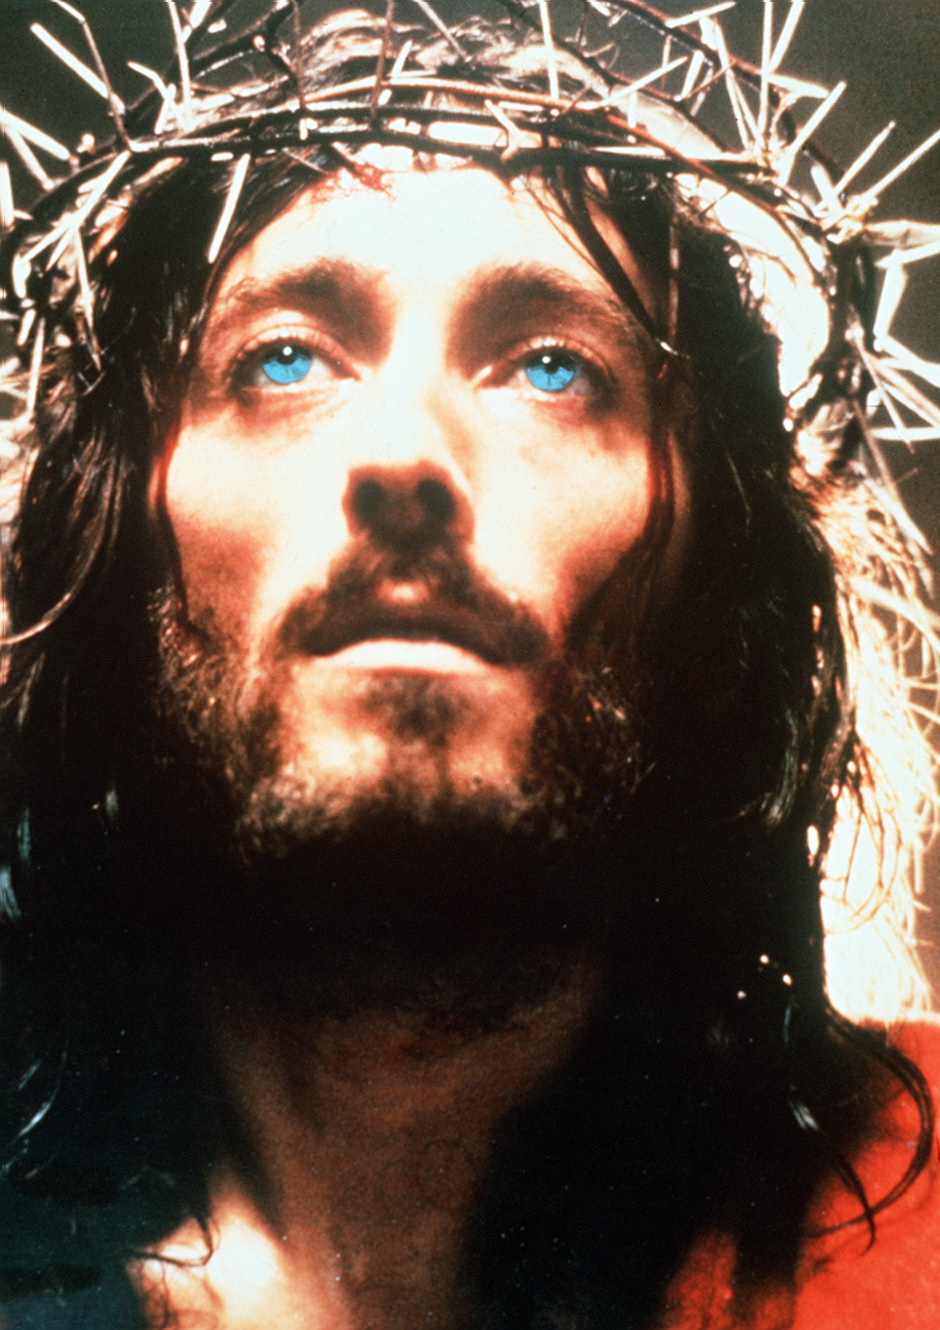 Începând de mâine, de la 20:30, Antena 1 difuzează mini seria „Iisus din Nazareth”, produsă de Franco Zeffirelli